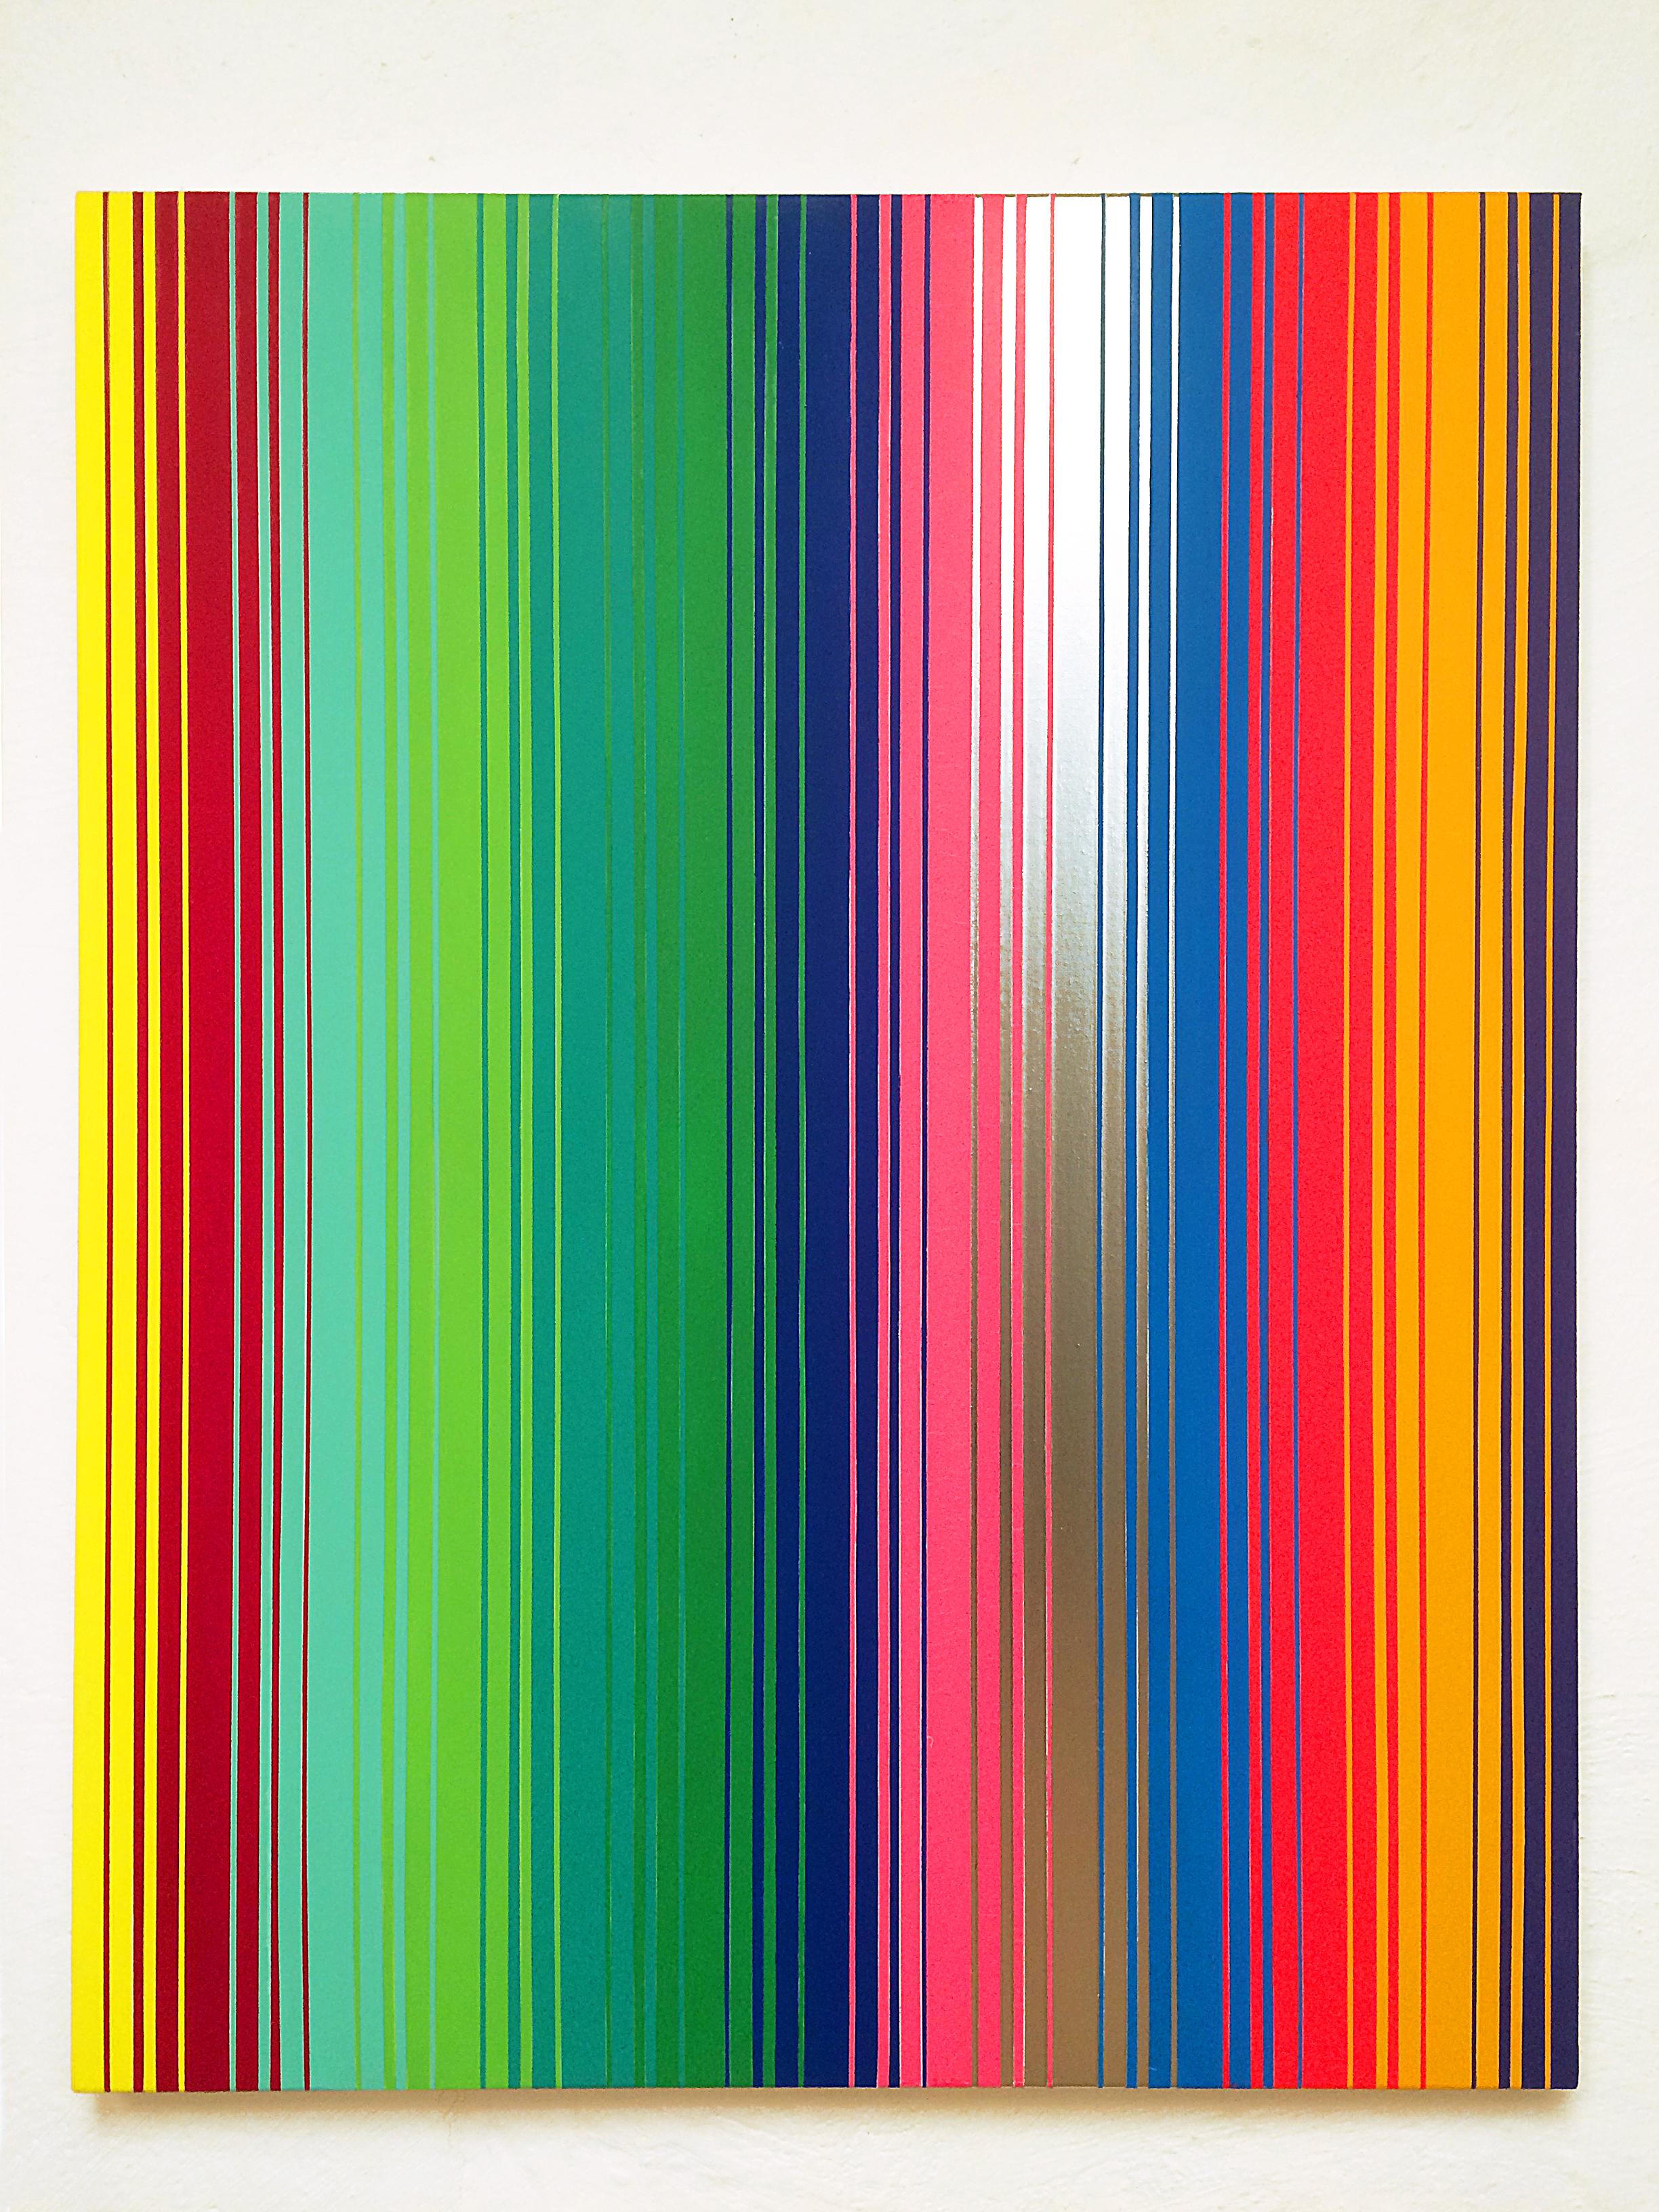 "Secuencia No. 16", 2015, acrílico y esmalte sobre tela, 100 x 80 cm.